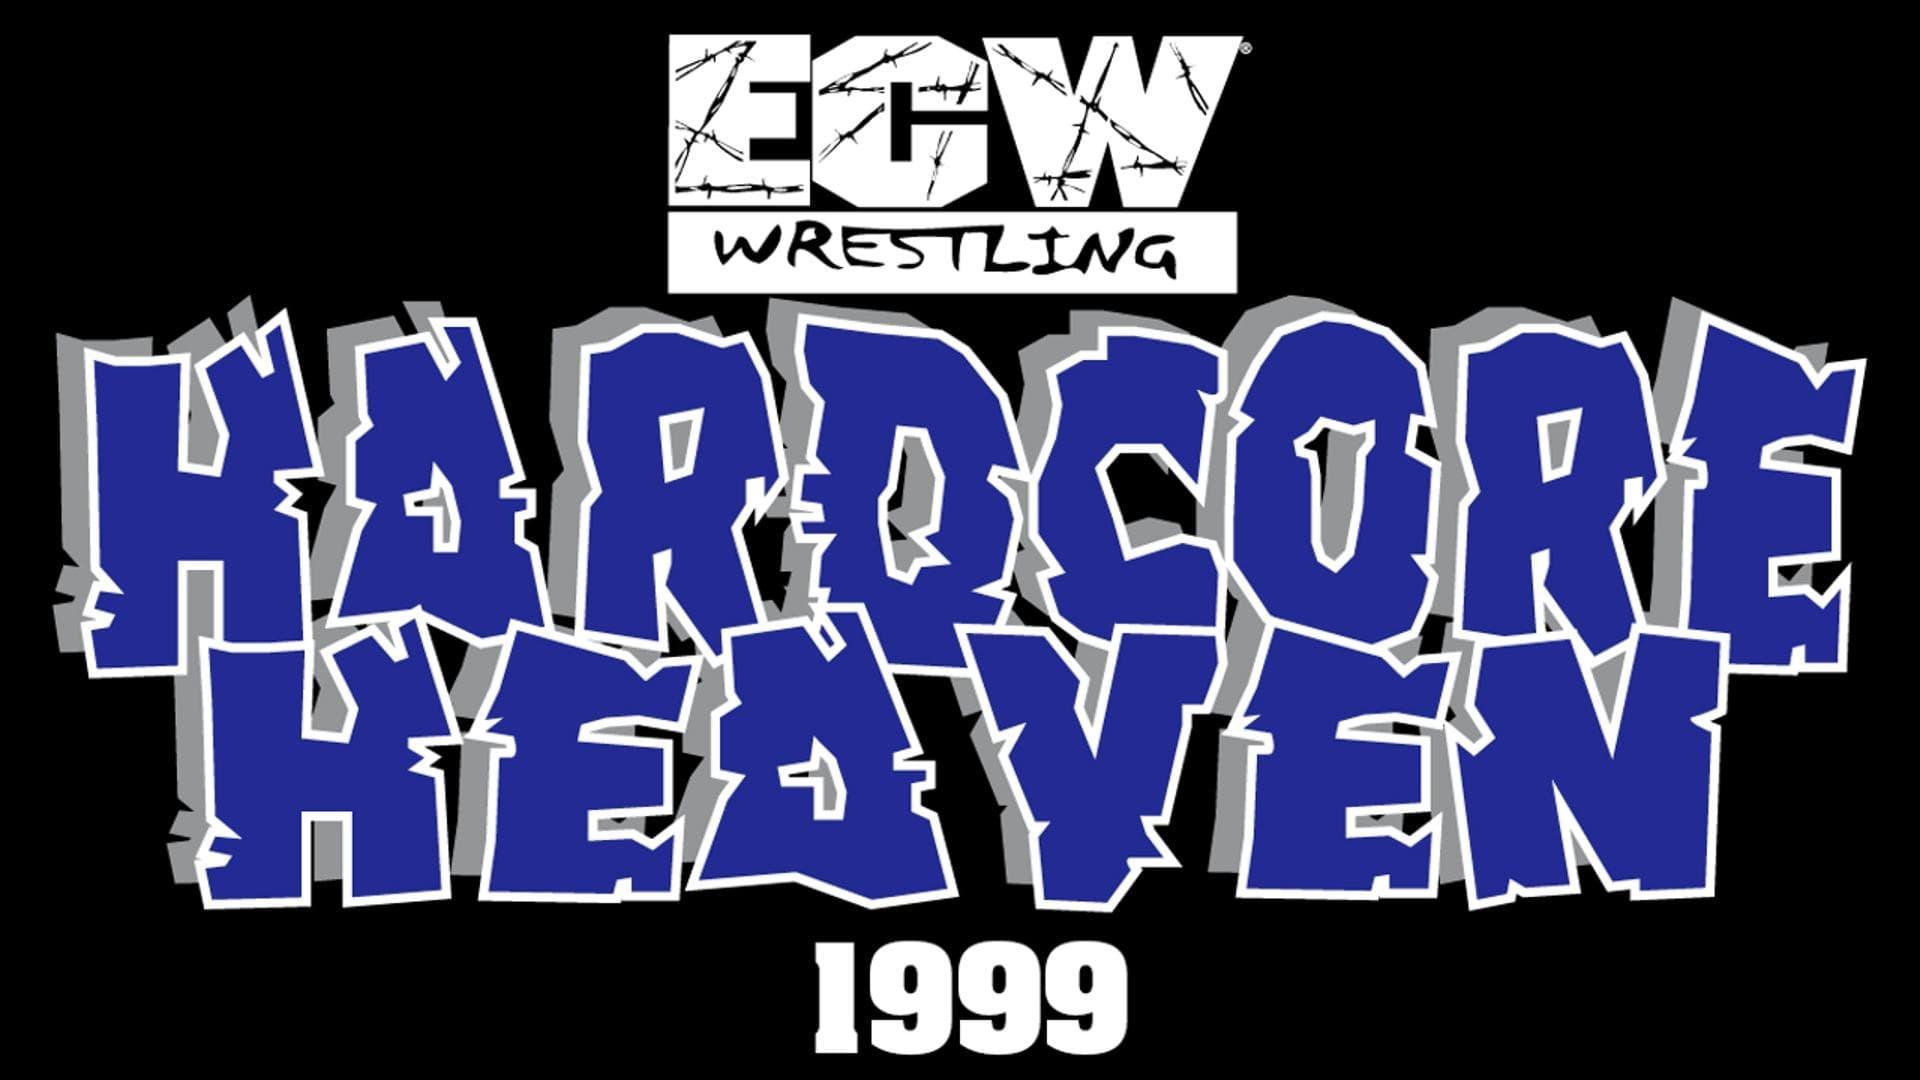 ECW Hardcore Heaven 1999 backdrop